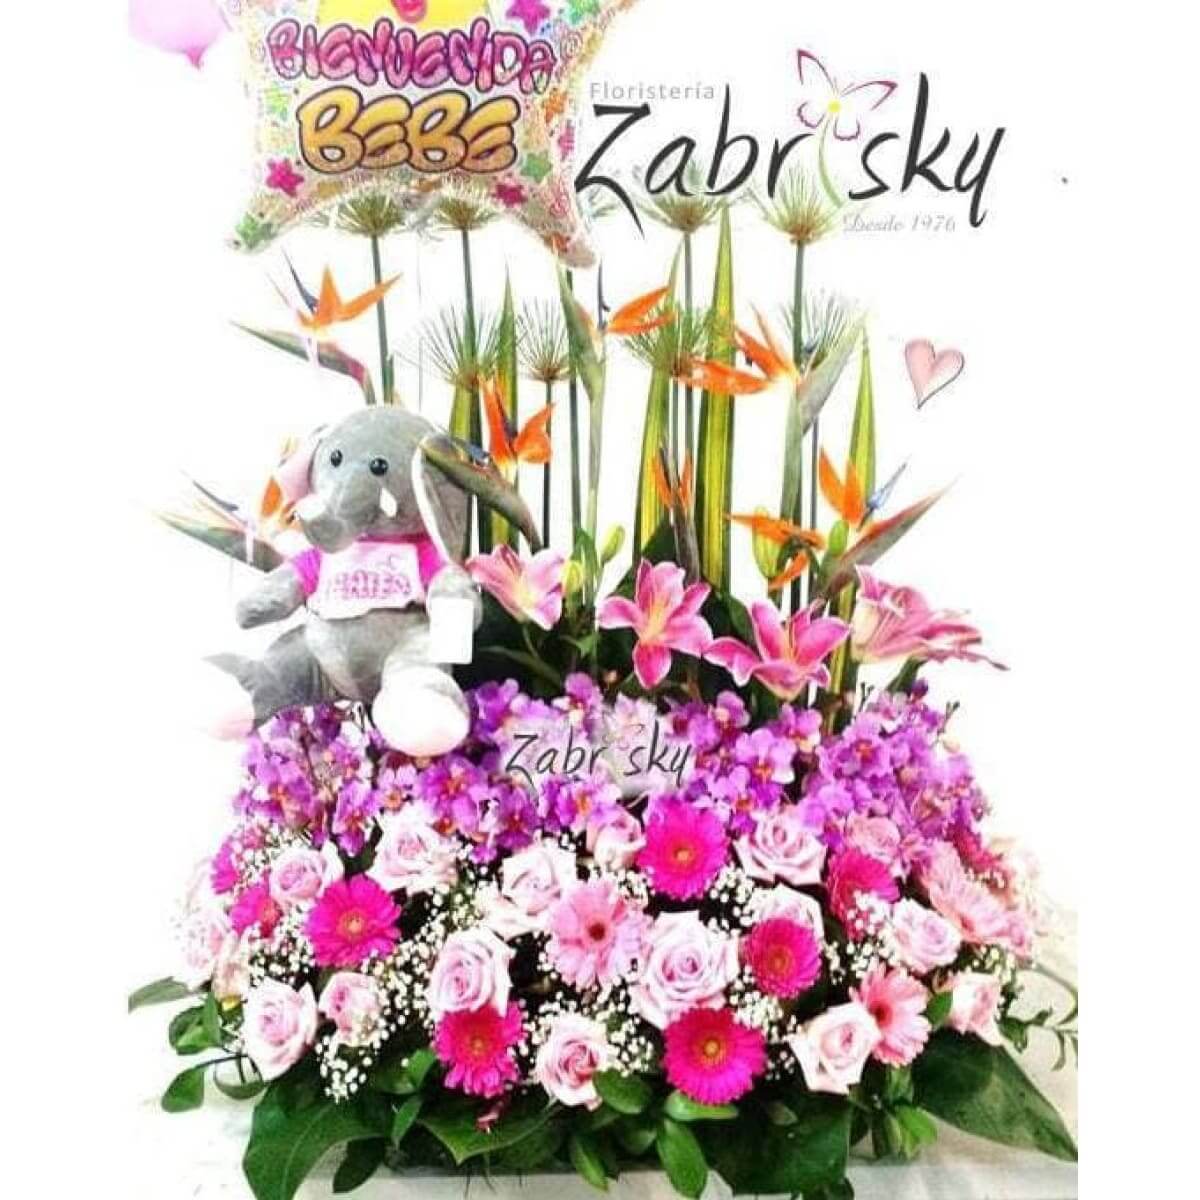 Rosas Rosadas y Gerberas con un adorable peluche - Floristería Zabrisky